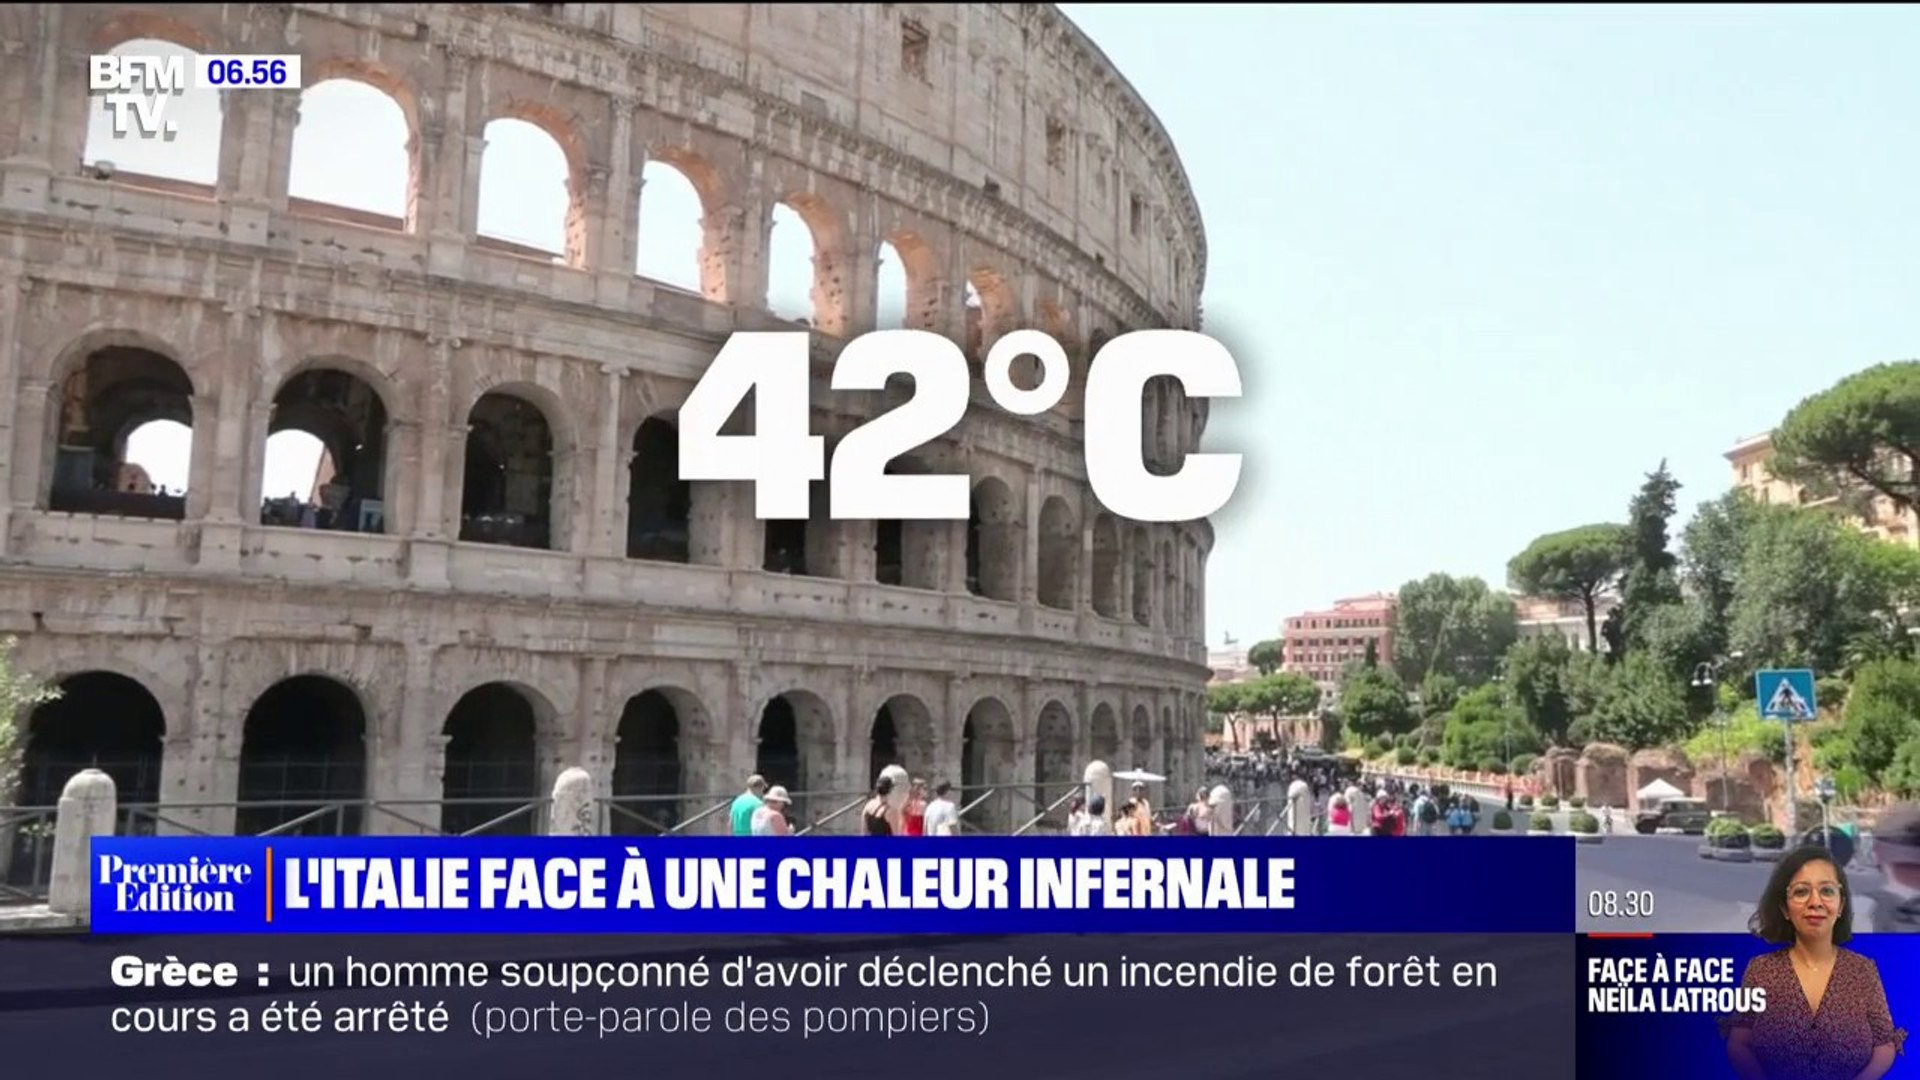 Humidificateurs d'air, chapeaux et fontaines... L'Italie fait face à une  chaleur infernale, avec 16 villes en alerte rouge canicule - Vidéo  Dailymotion